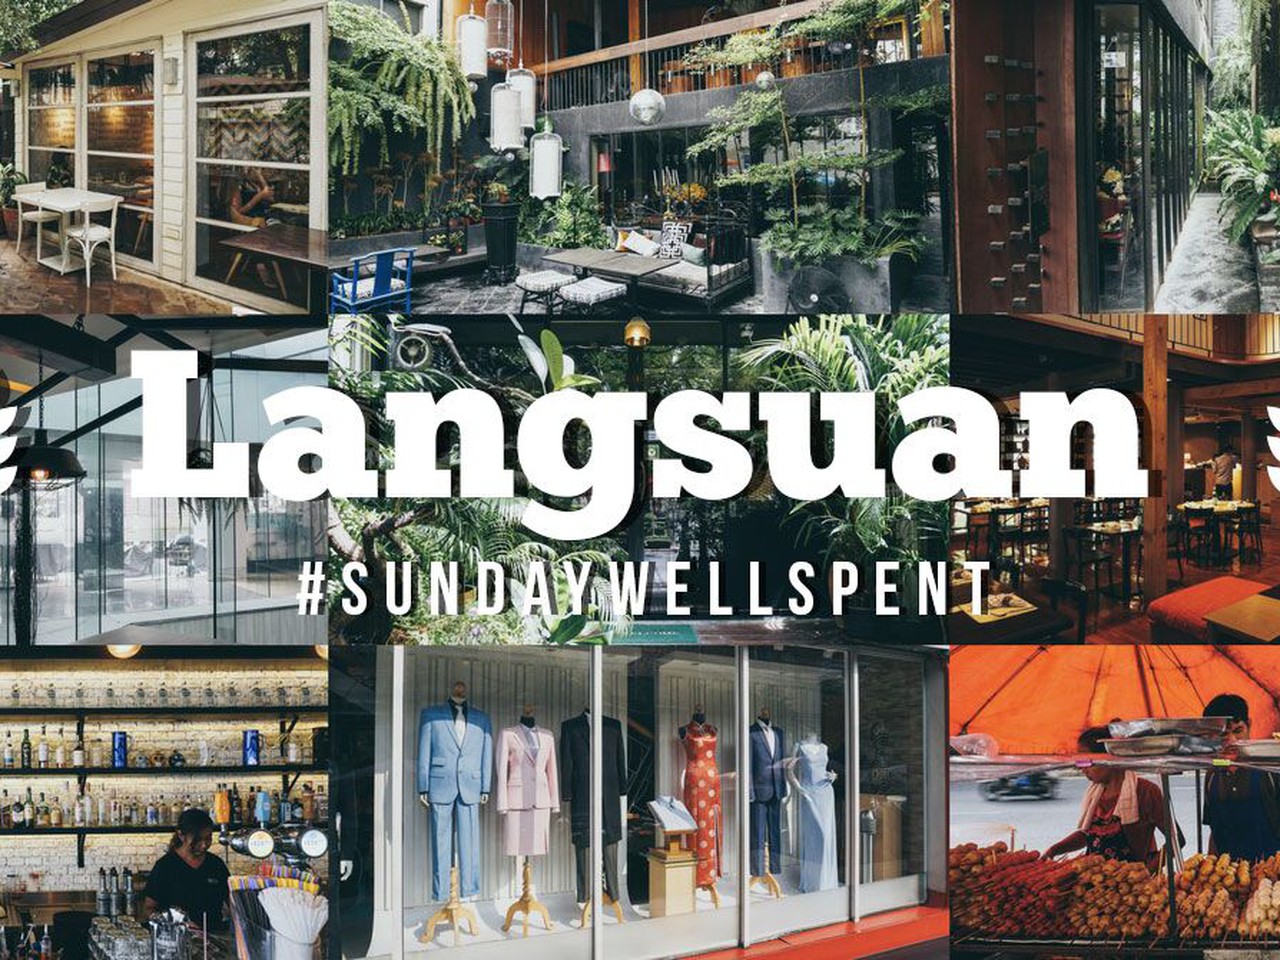 SundayWellSpent พักผ่อนร้านโน้น…นั่งชิลร้านนี้ ที่ซอยหลังสวน | Siam2nite